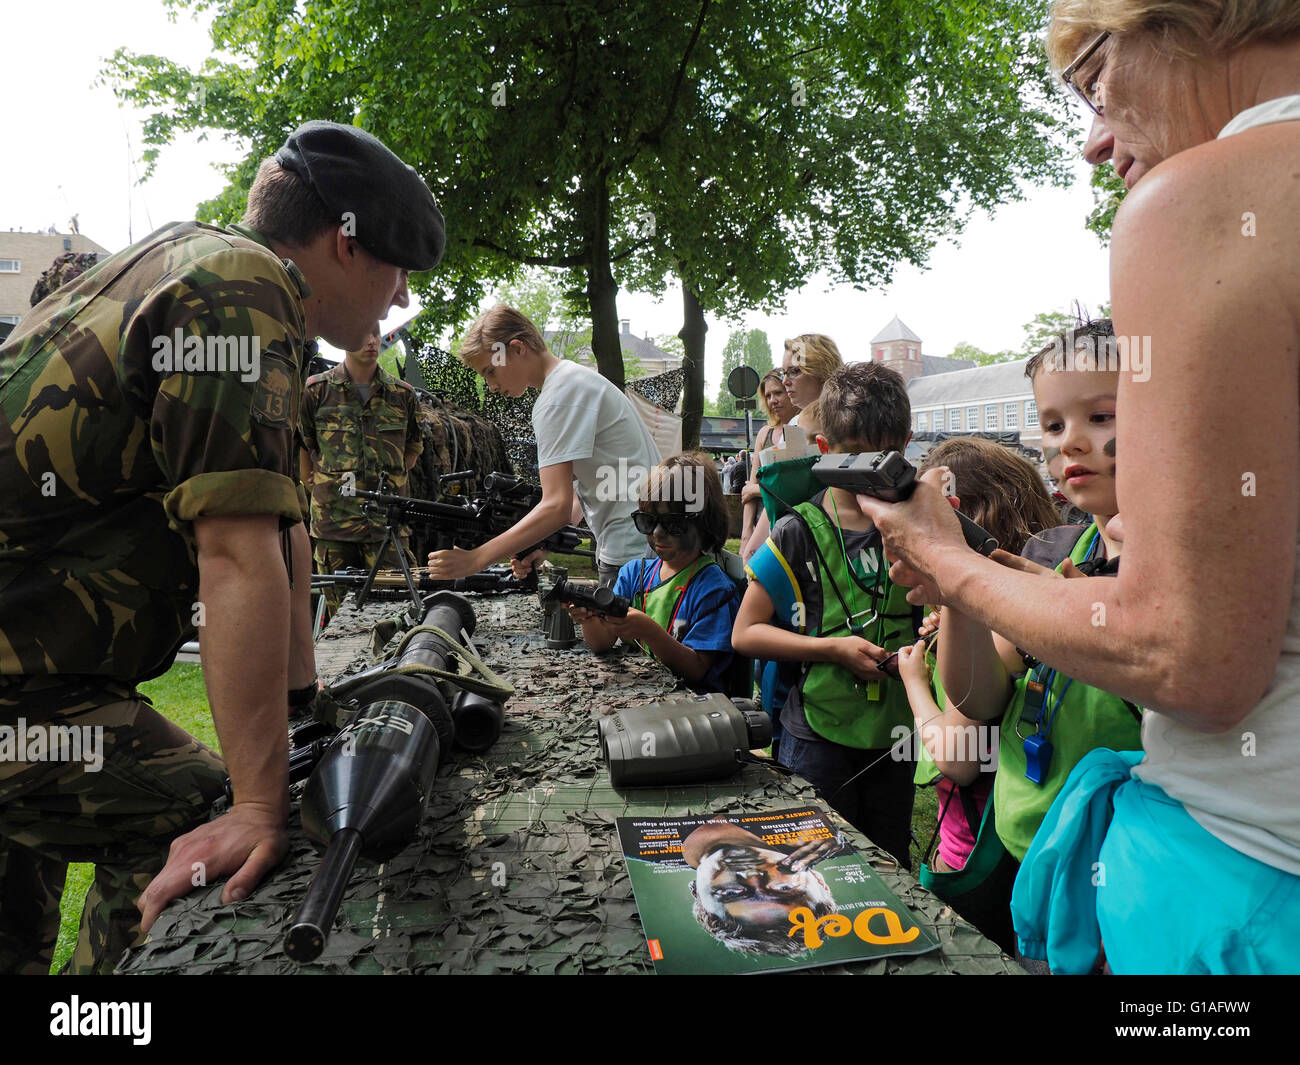 Soldado del ejército holandés que muestran diversas armas y armamento a civiles y niños en el parque Valkenberg, Breda, Holanda. Foto de stock